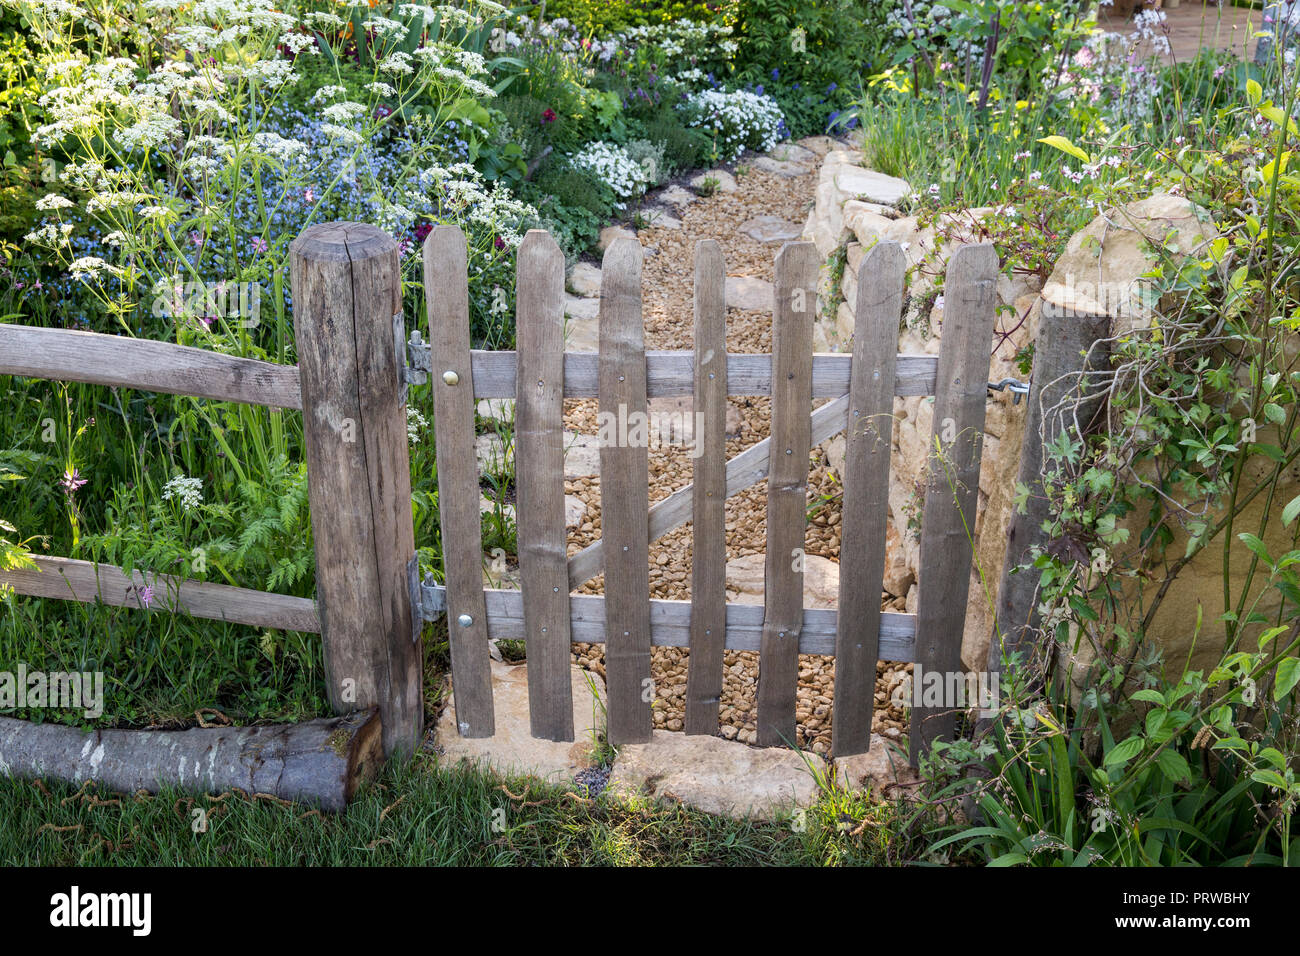 Rustique vieux piquet en bois porte de jardin et clôture fleurs sauvages style jardin cottage anglais plantation vache persil chemin de gravier Malvern Spring UK Banque D'Images